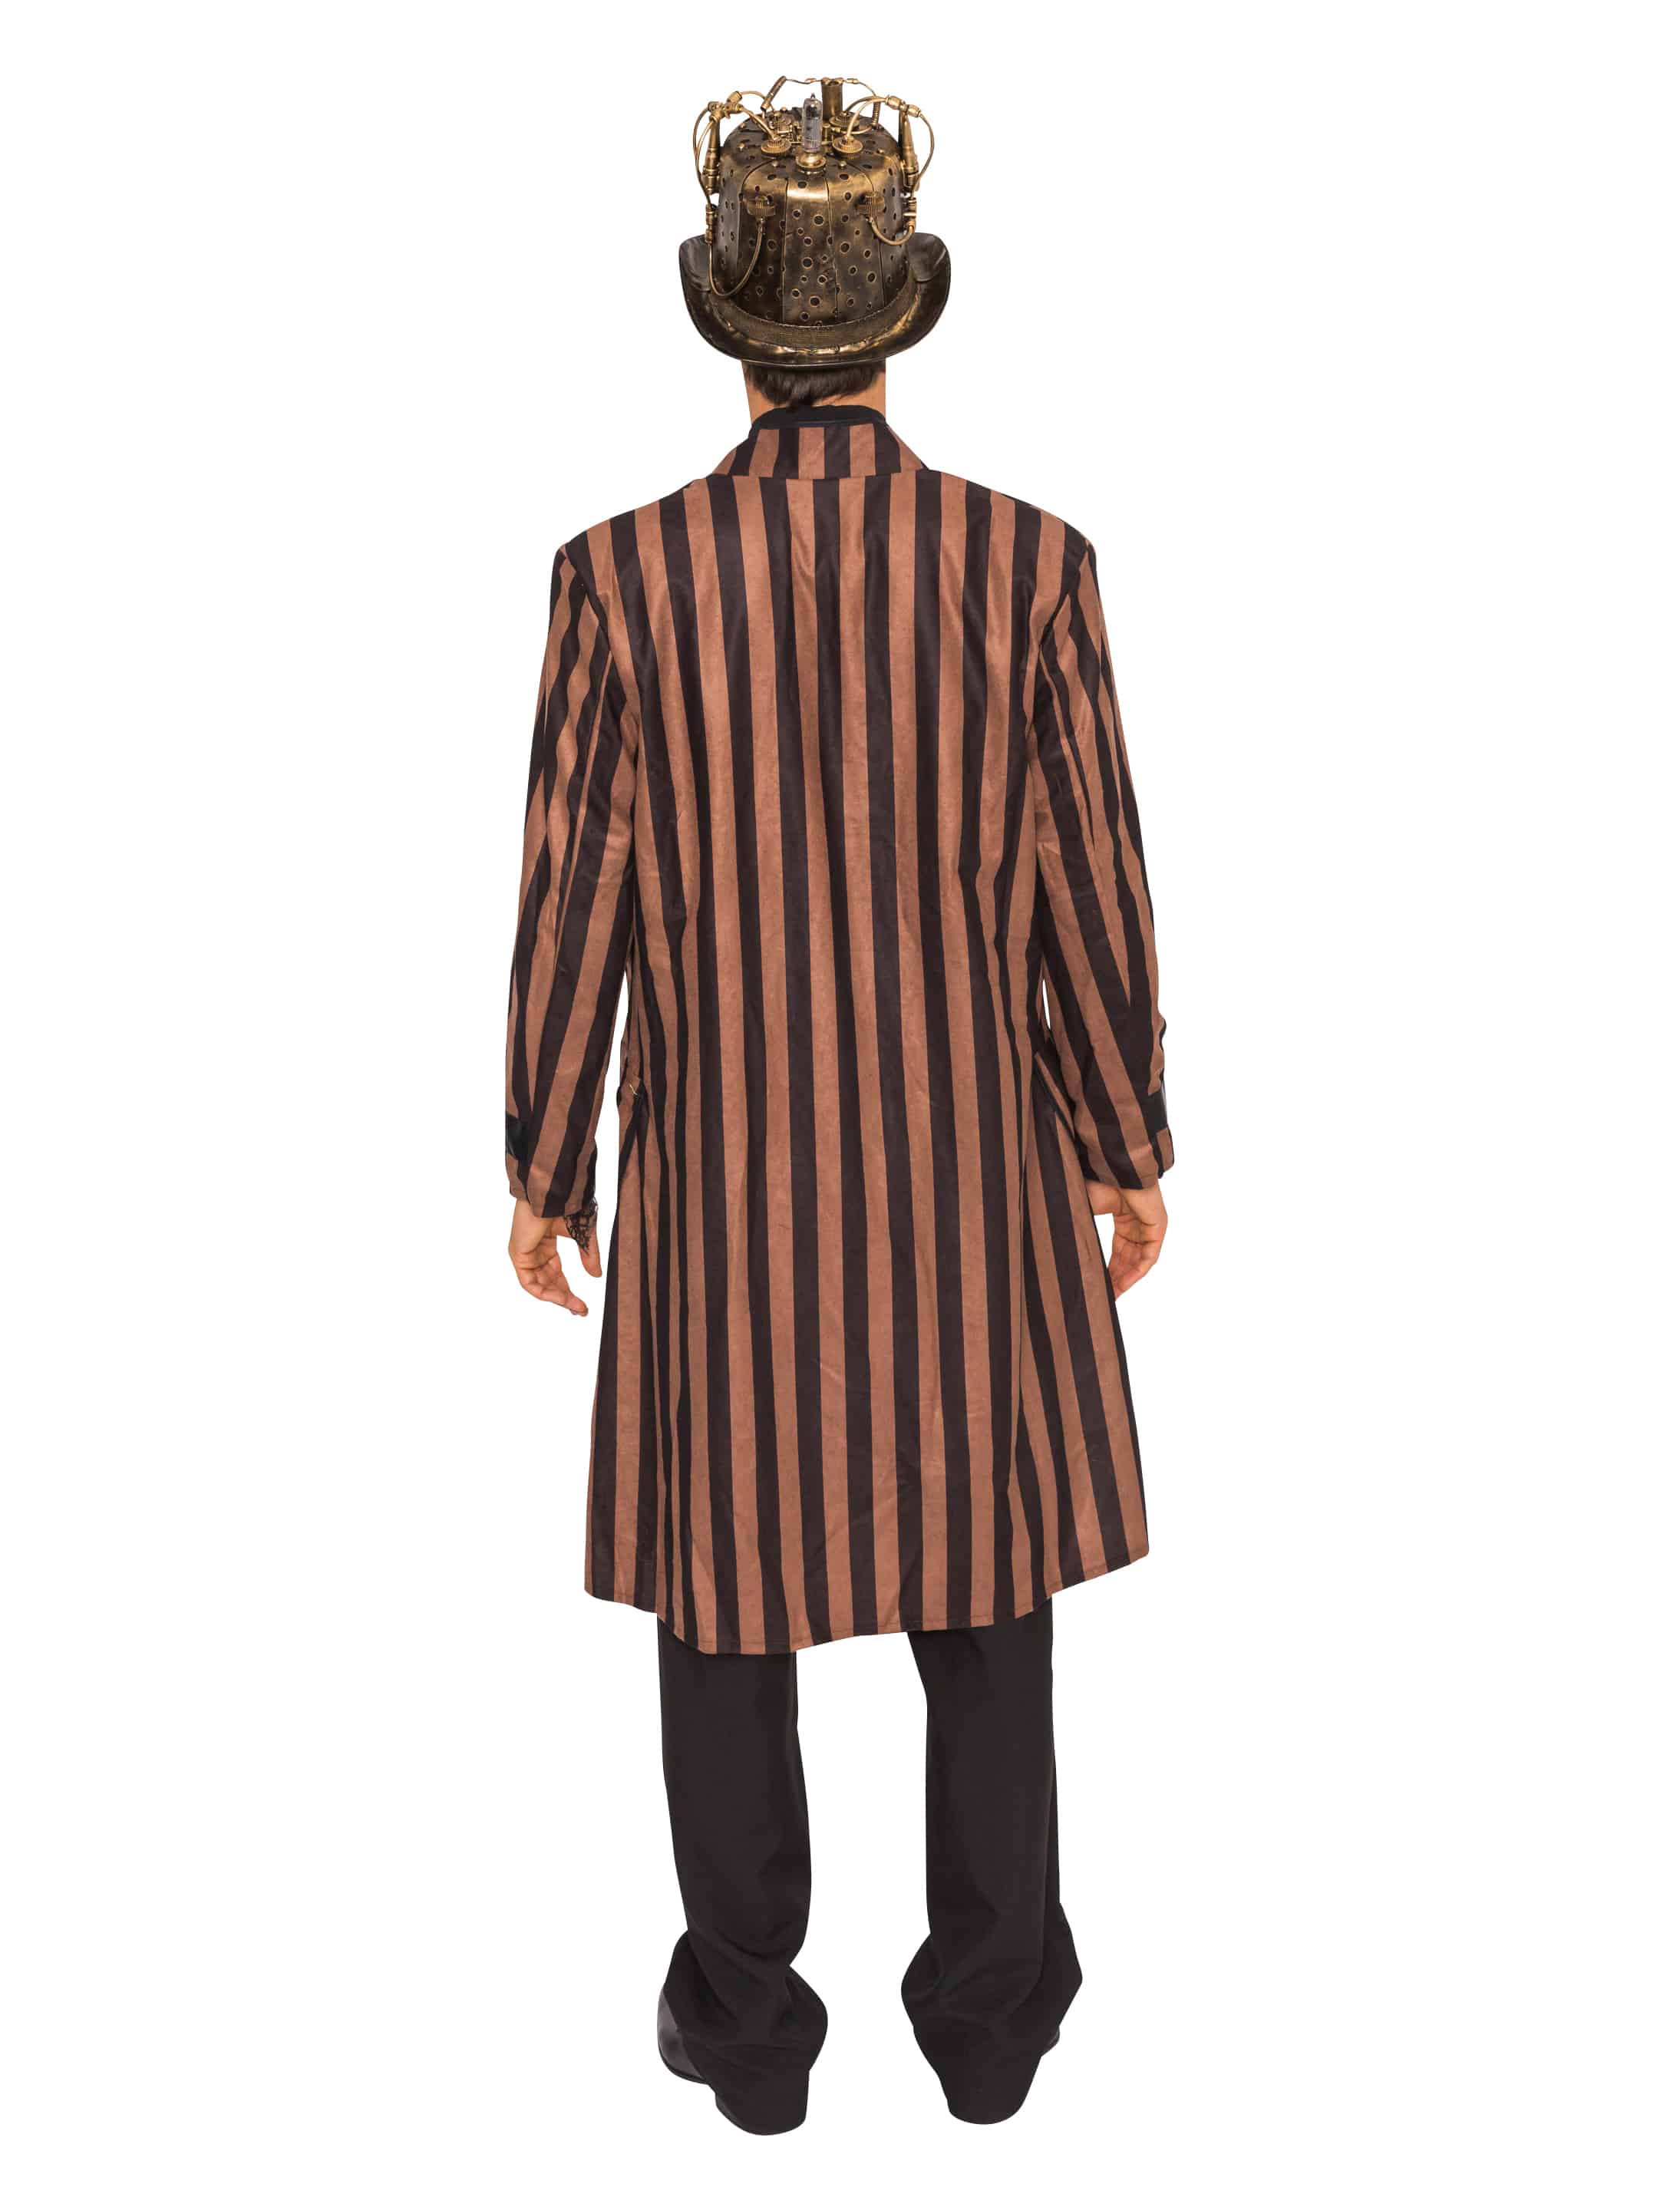 Mantel Steampunk mit Streifen Herren braun/schwarz L